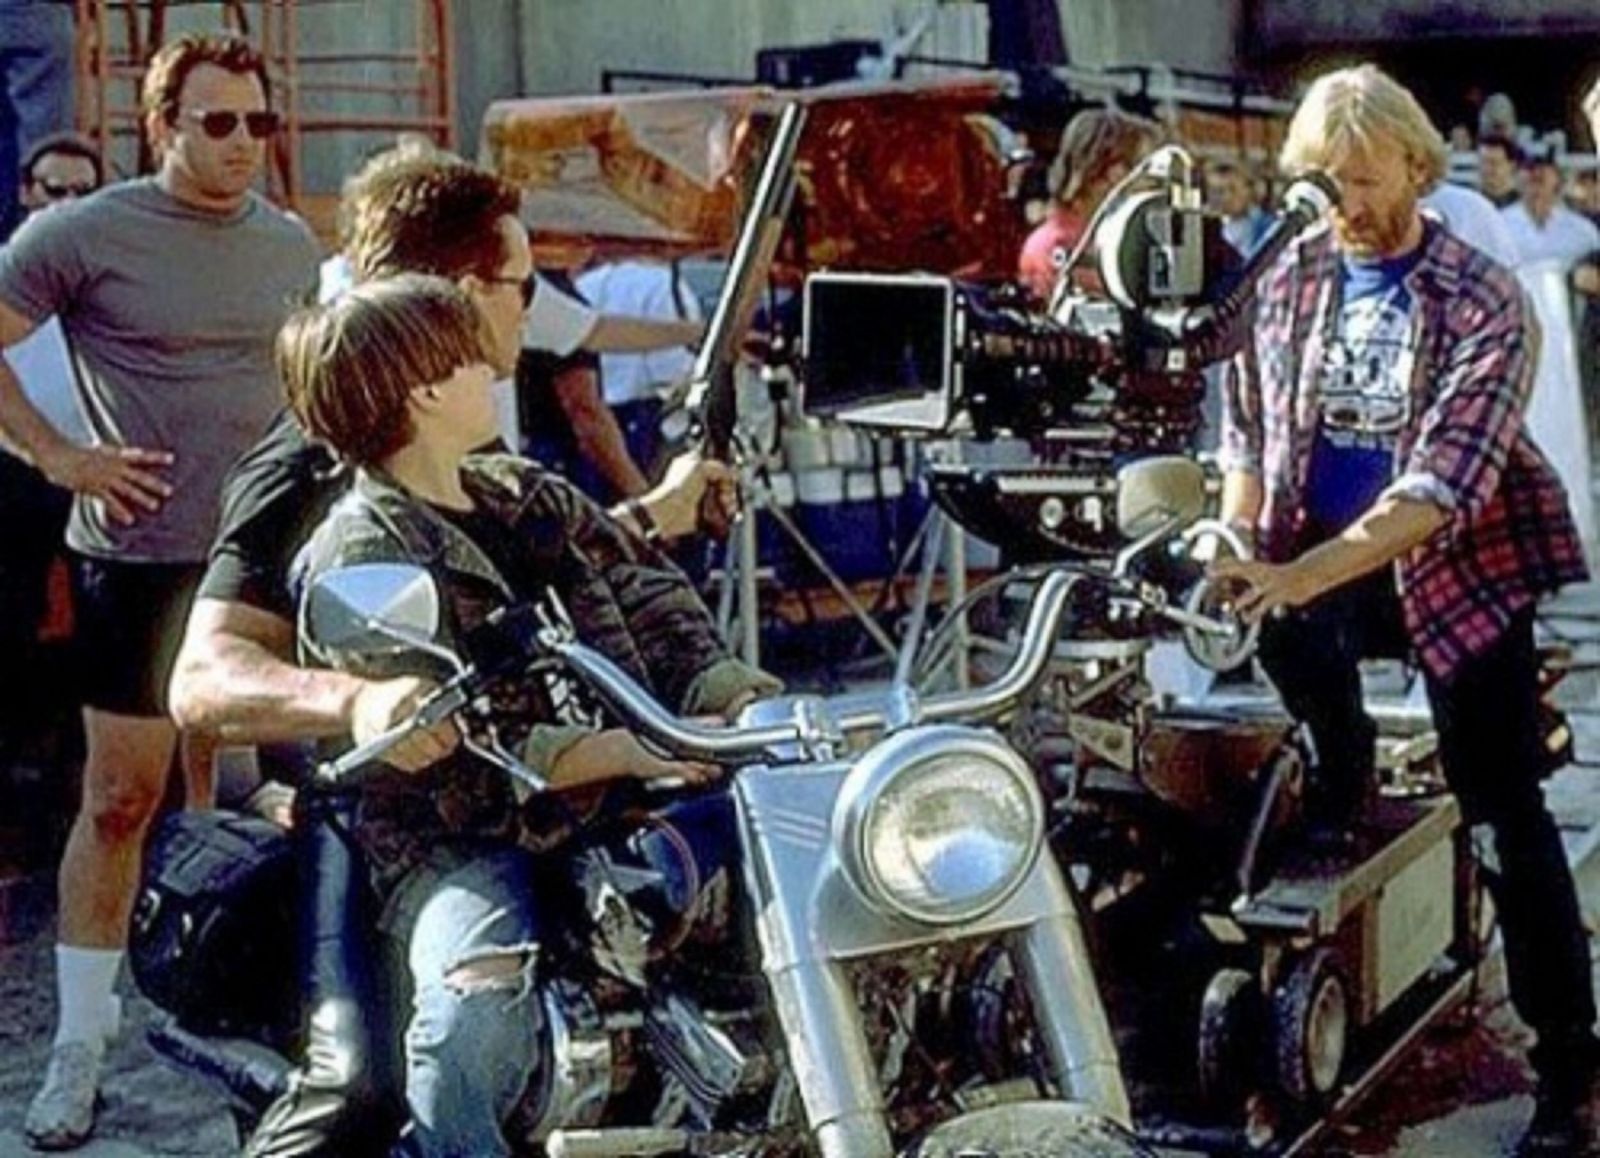 Эдвард Ферлонг, Арнольд Шварценеггер и Джеймс Кэмерон на съемочной площадке фильма "Терминатор 2: Судный день"